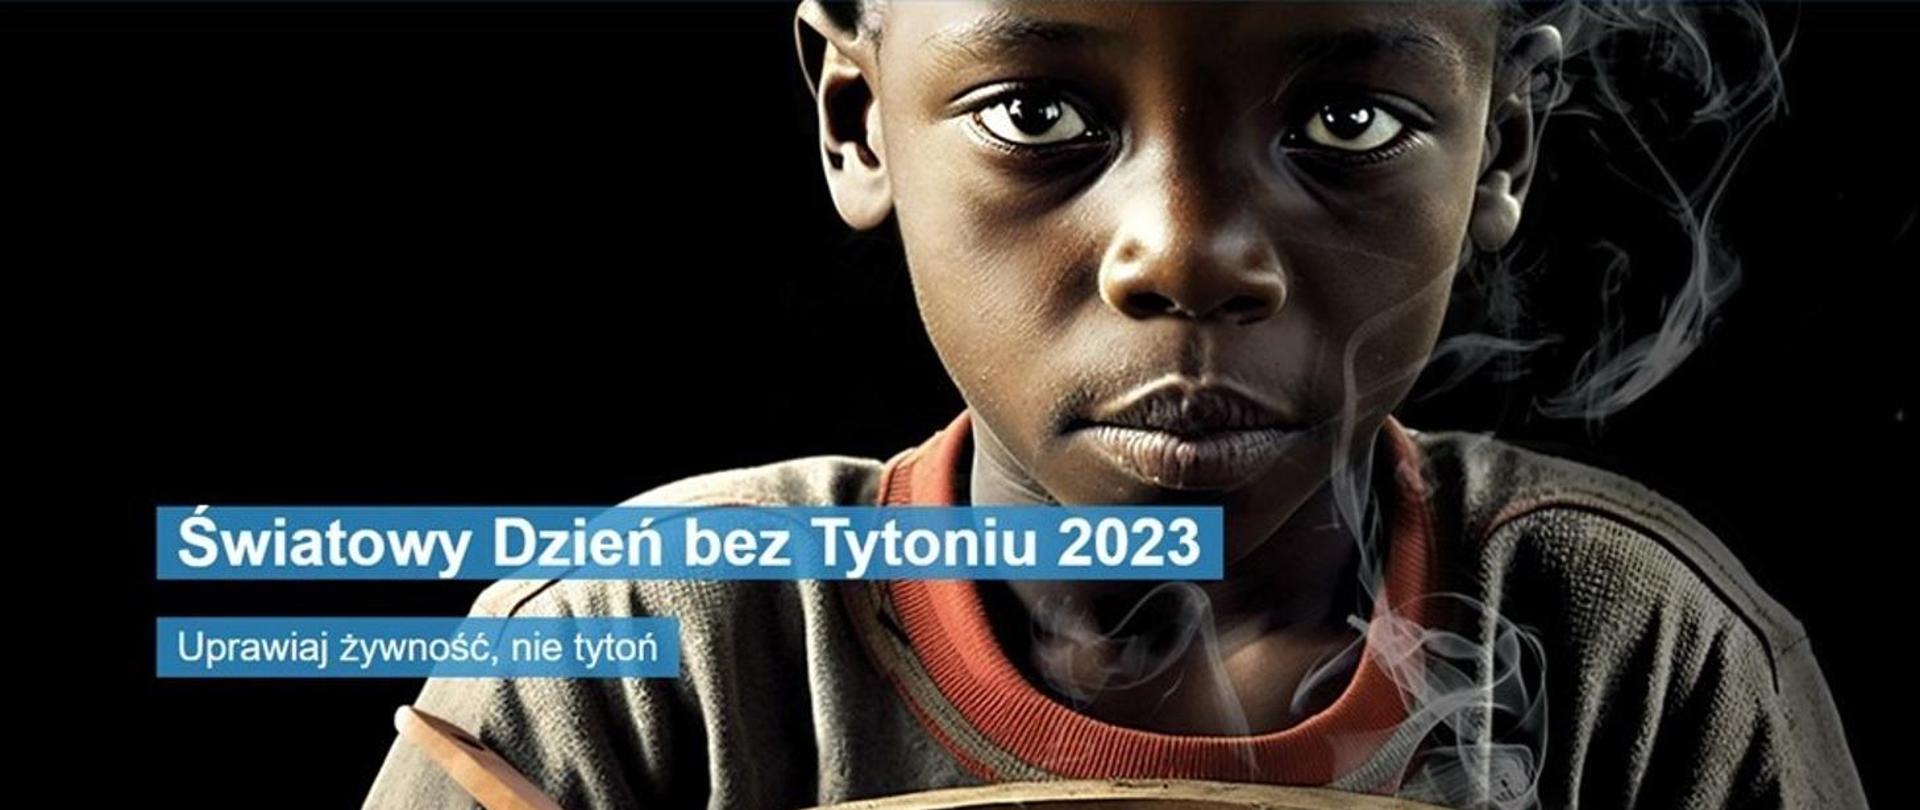 Grafika WHO przedstawiająca chłopca w oparach dymu tytoniowego. Obok napis: Światowy Dzień bez Tytoniu 2023 - „Uprawiaj żywność, nie tytoń”